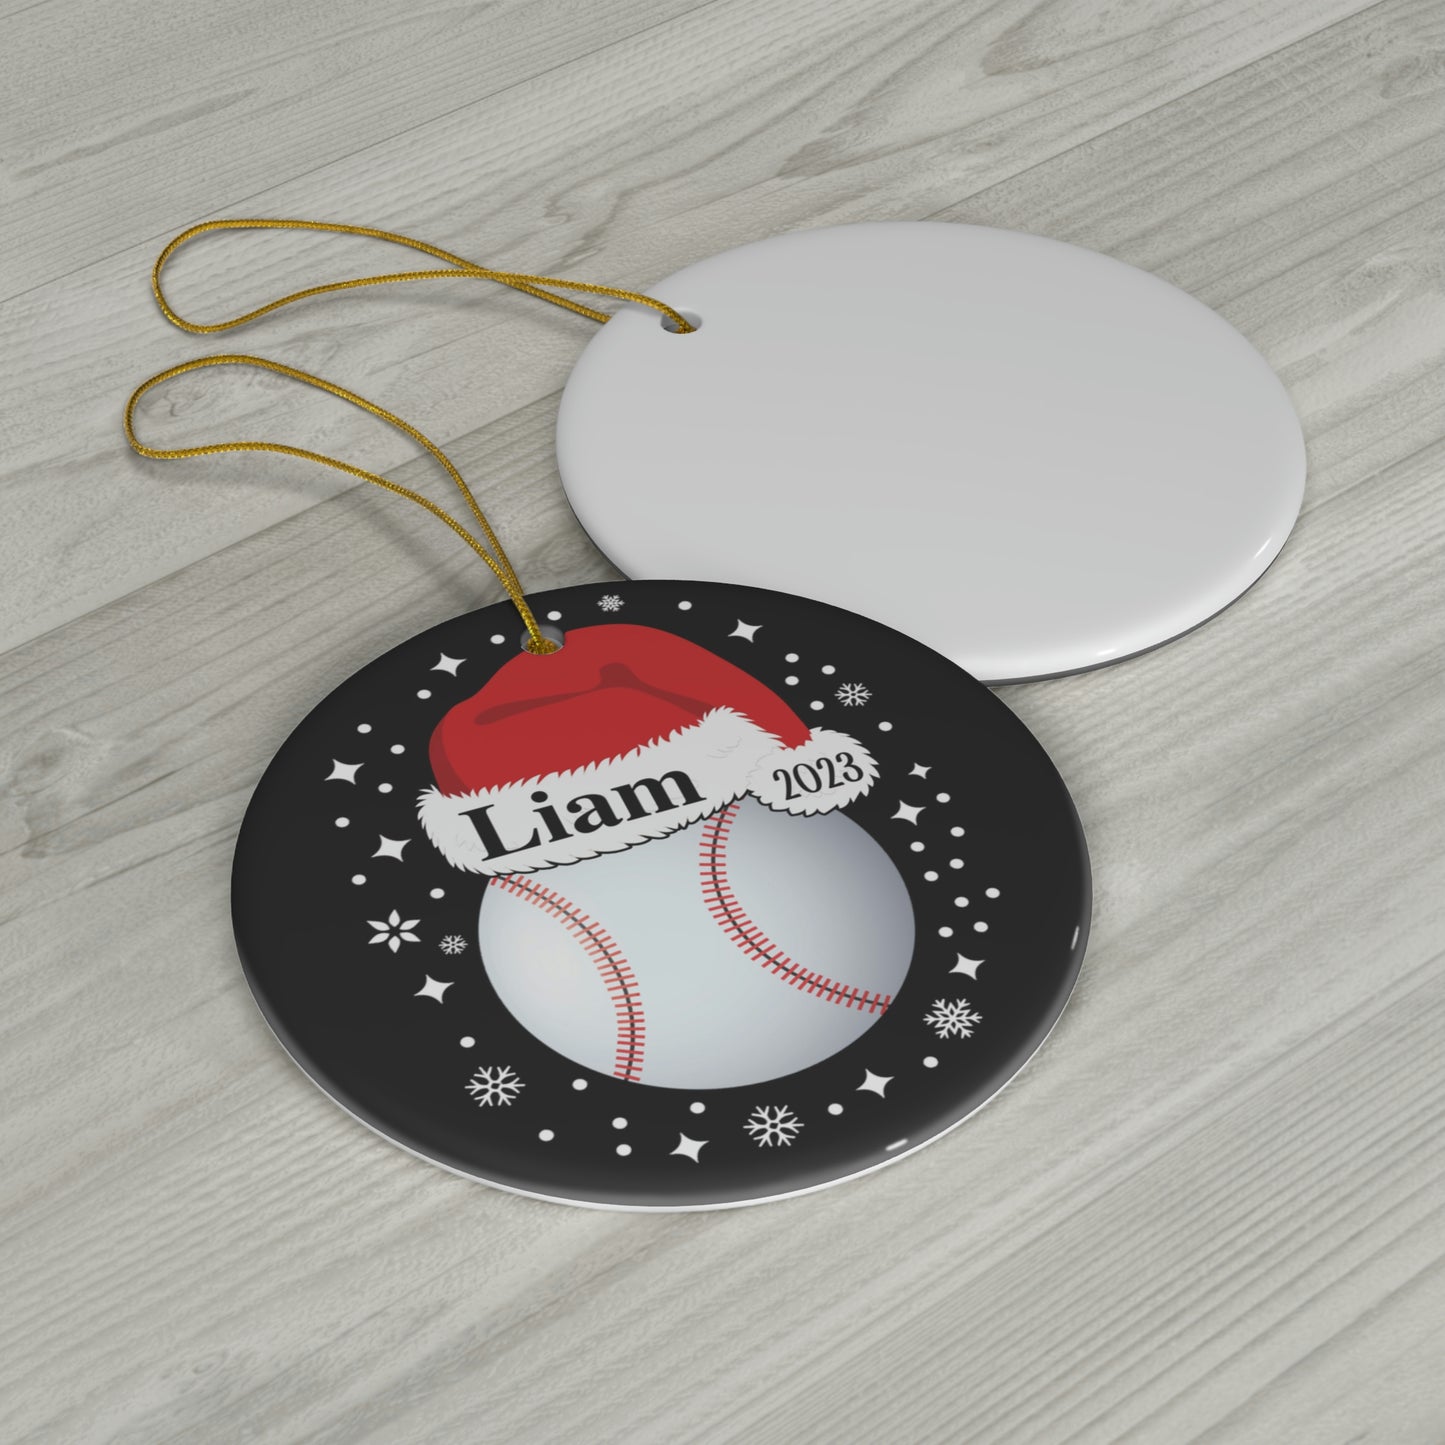 Baseball Ornament, Personalized Baseball Christmas Ornament, Ceramic Tree Ornament for Baseball Players